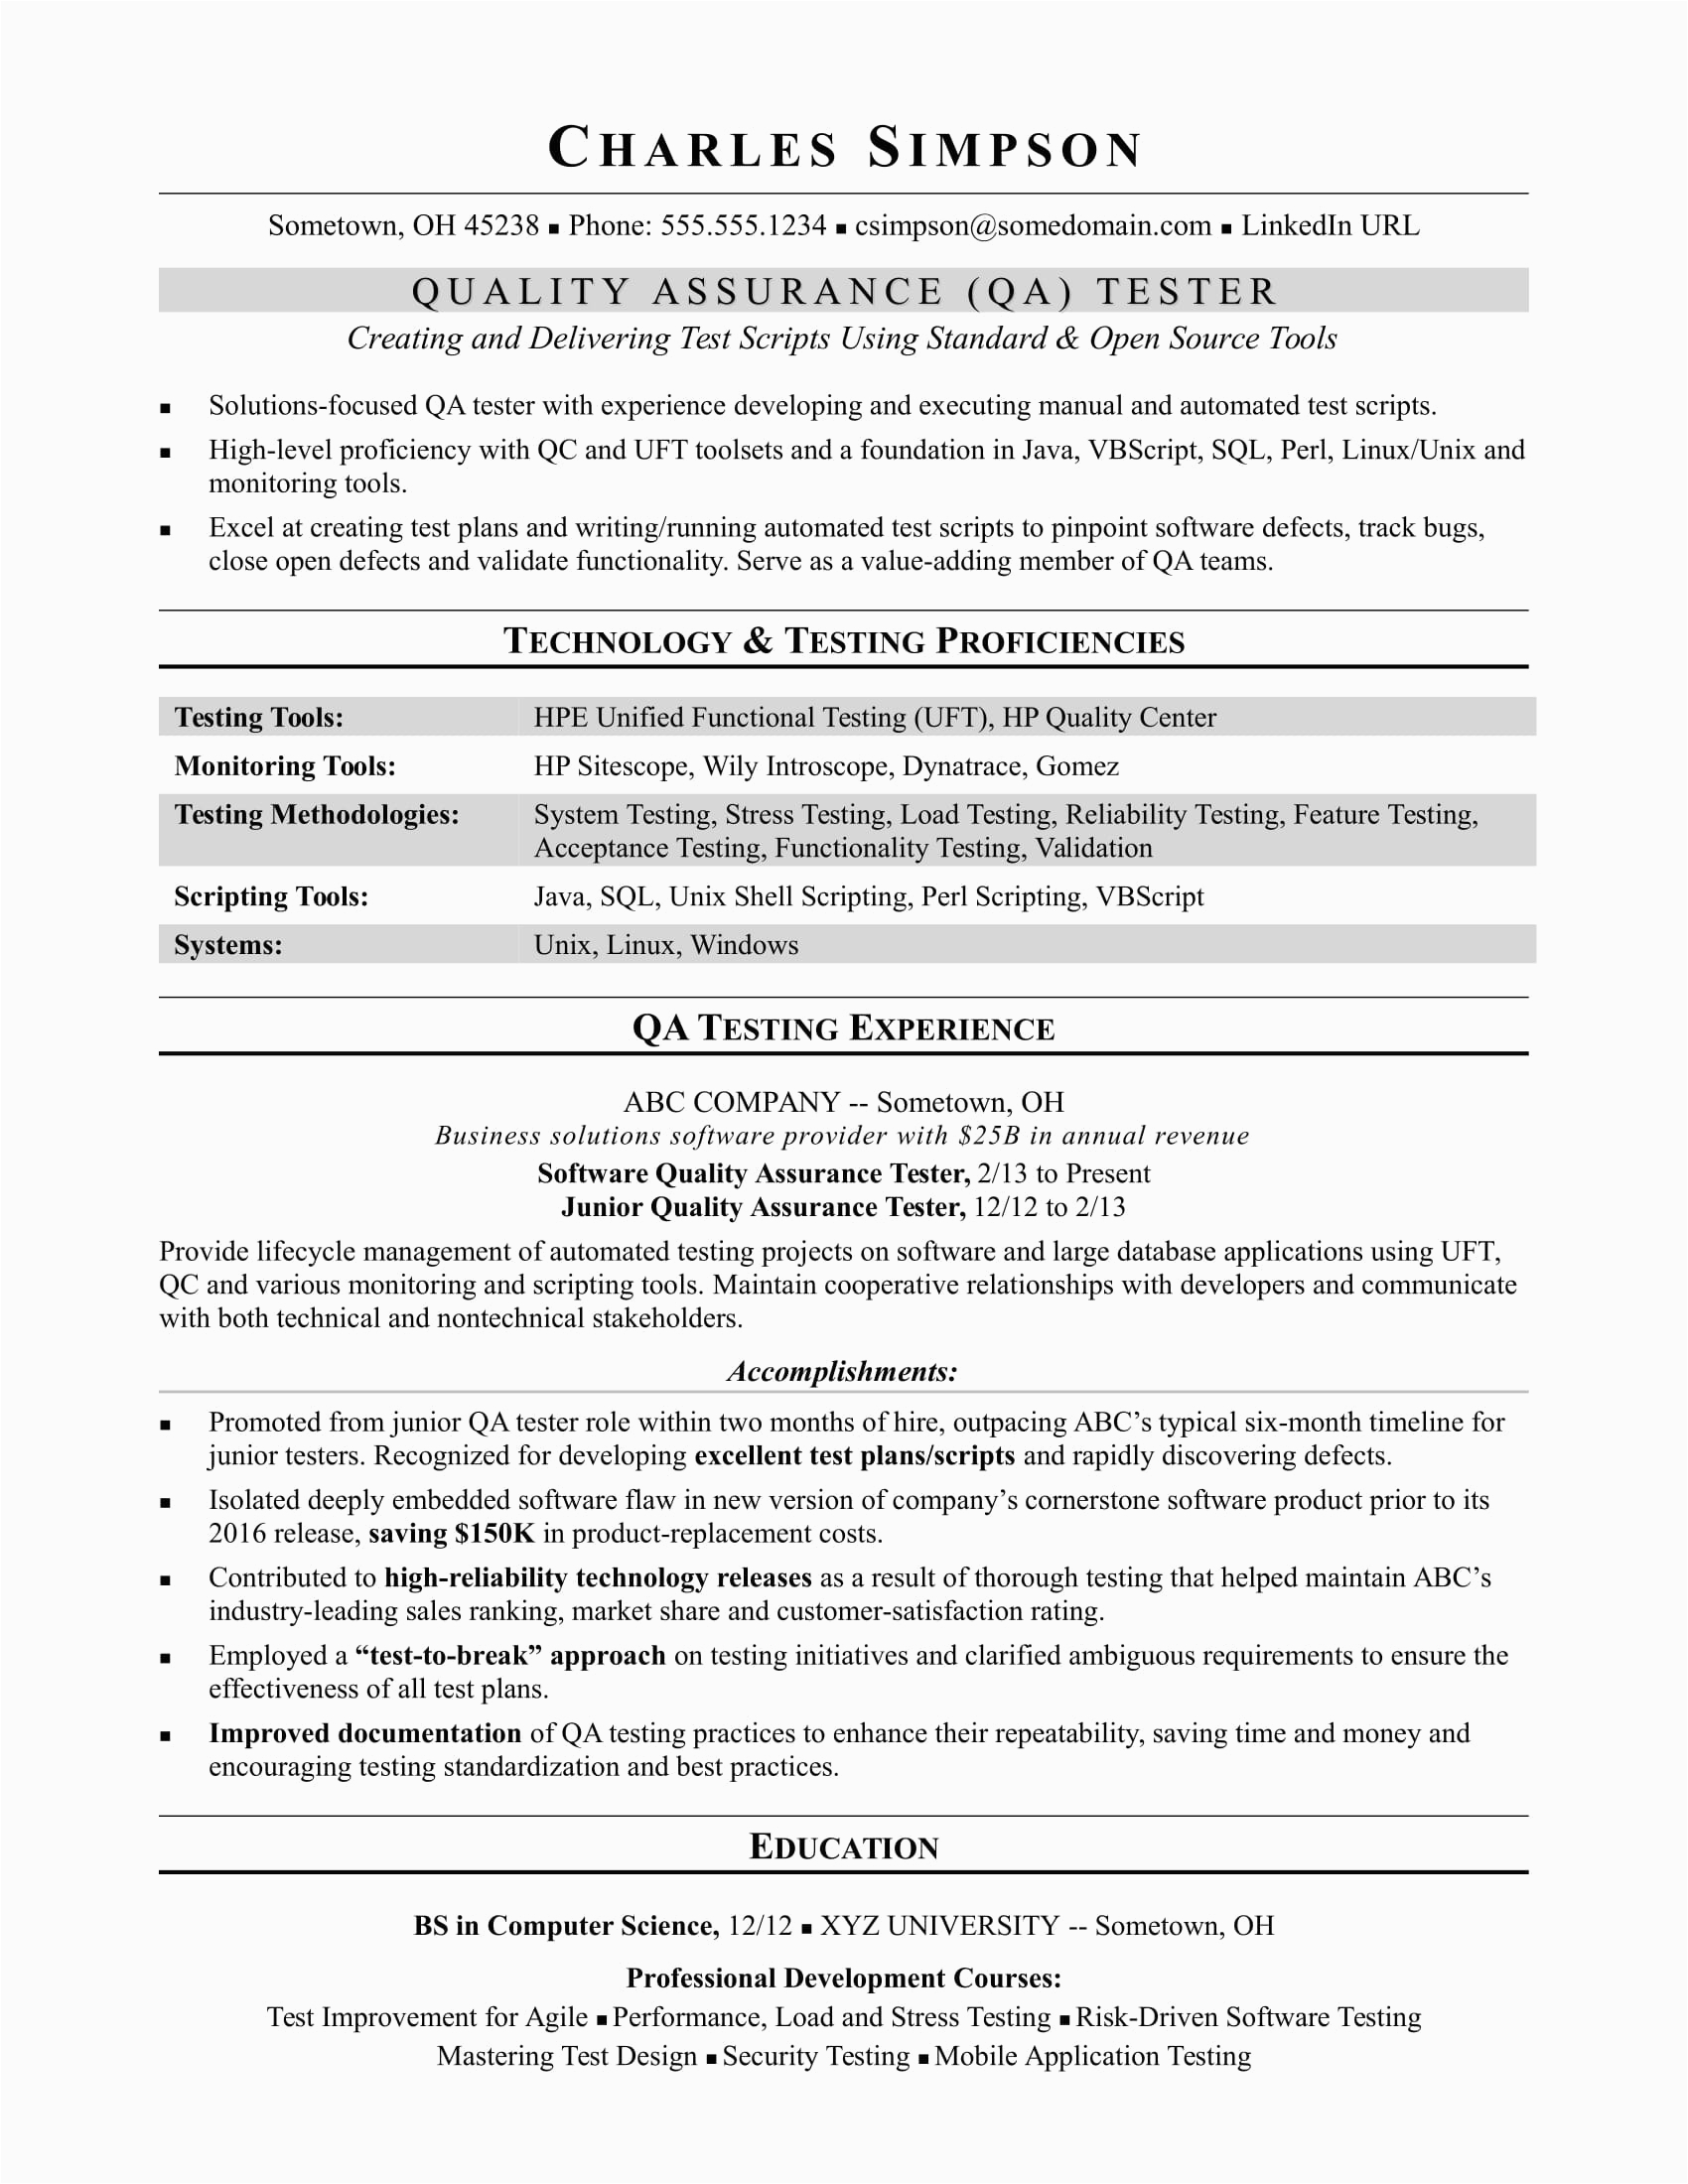 Sample Resume for Ecommerce Qa Tester 10 E Merce Qa Tester Resume Proposal Resume